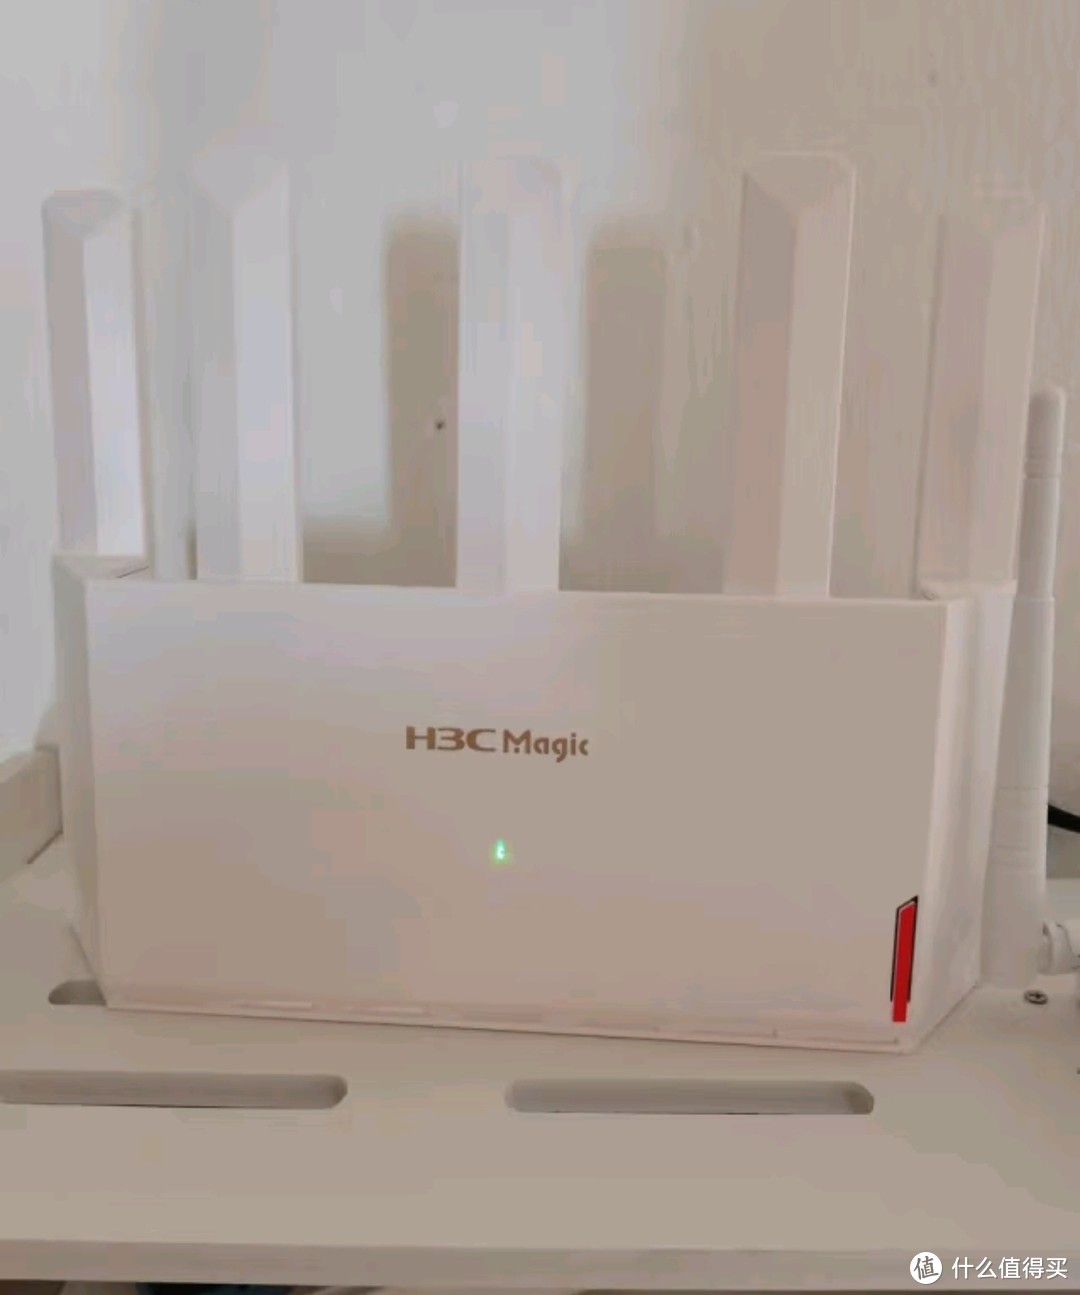 H3C 新华三 NX30Pro路由器千兆WiFi6无线AX3000 高速穿墙王家用5G双频mesh电竞路由游戏加速